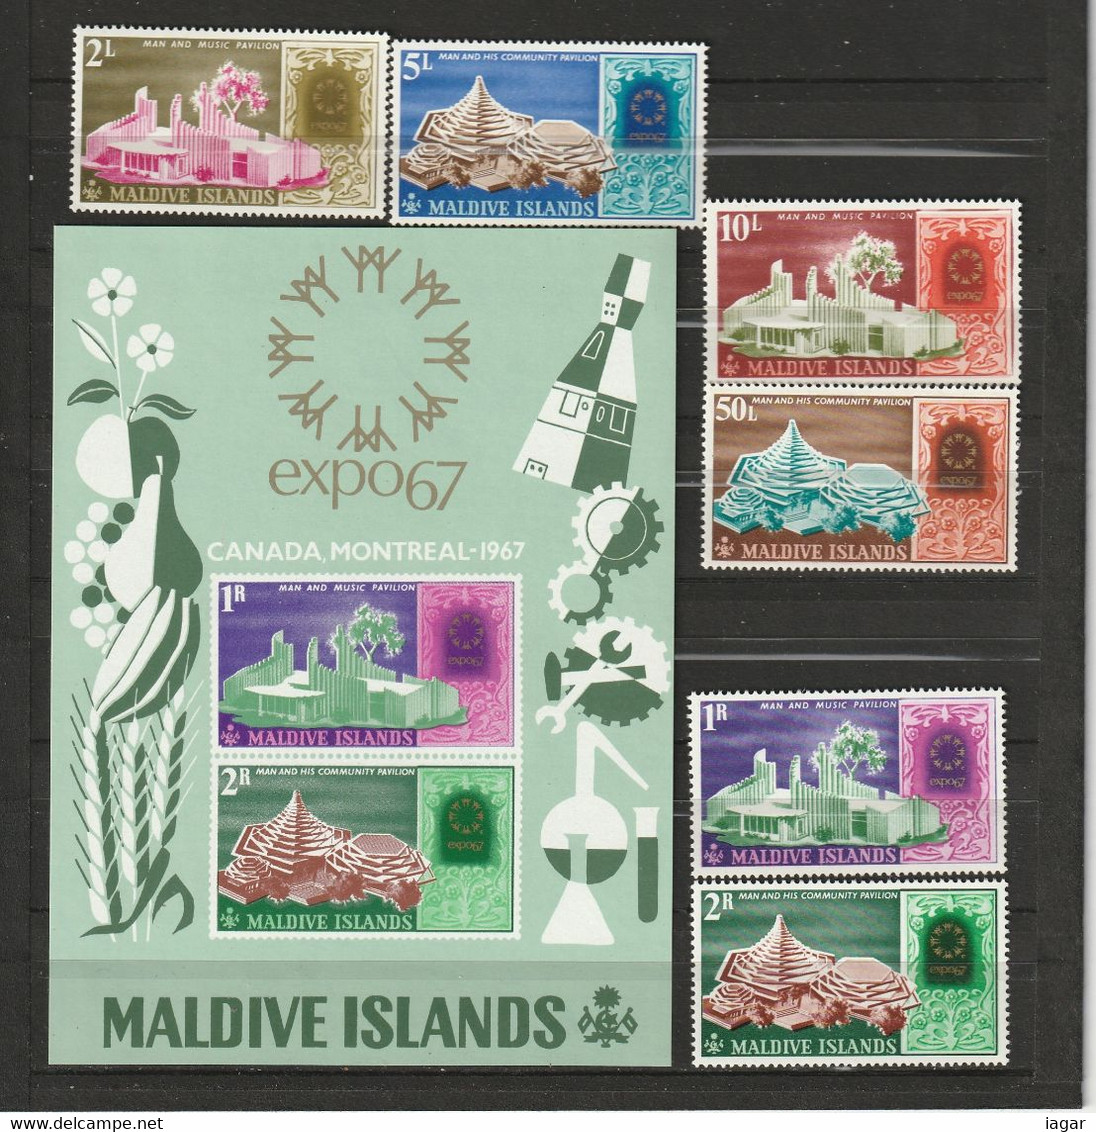 THEMATIC  WORLD FAIR - MALDIVE - 1967 – Montreal (Canada)